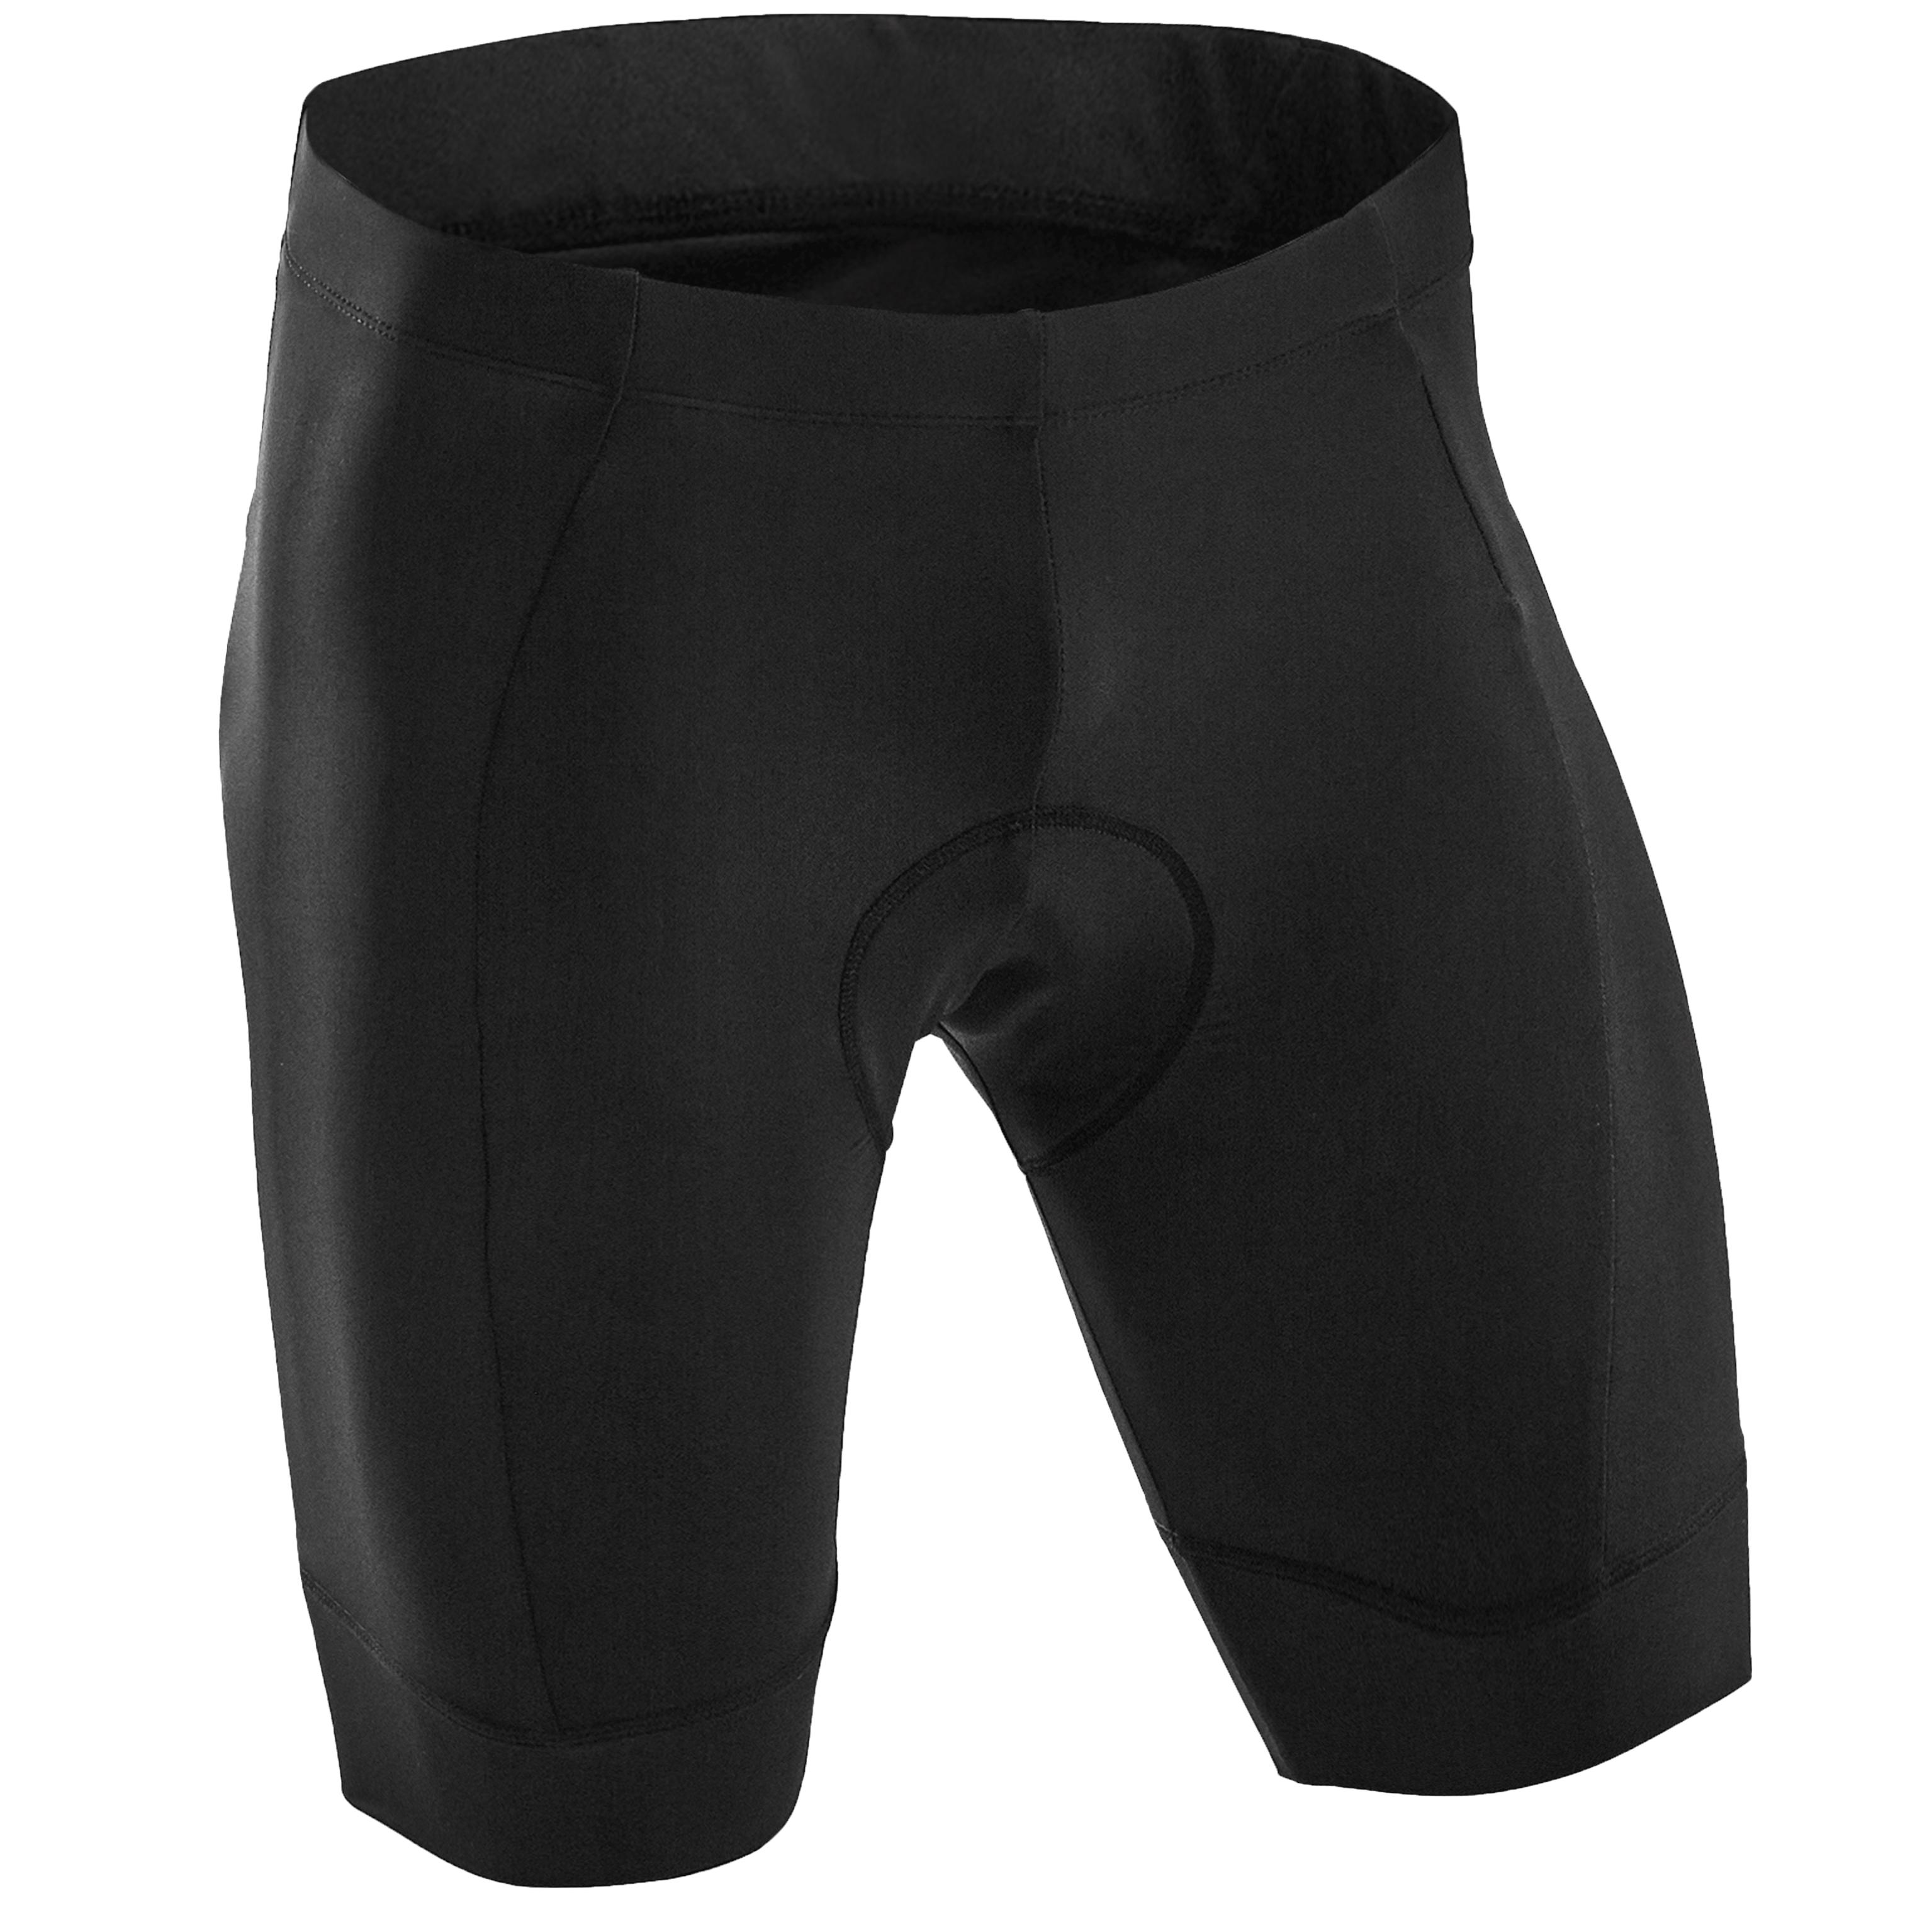 decathlon bike shorts